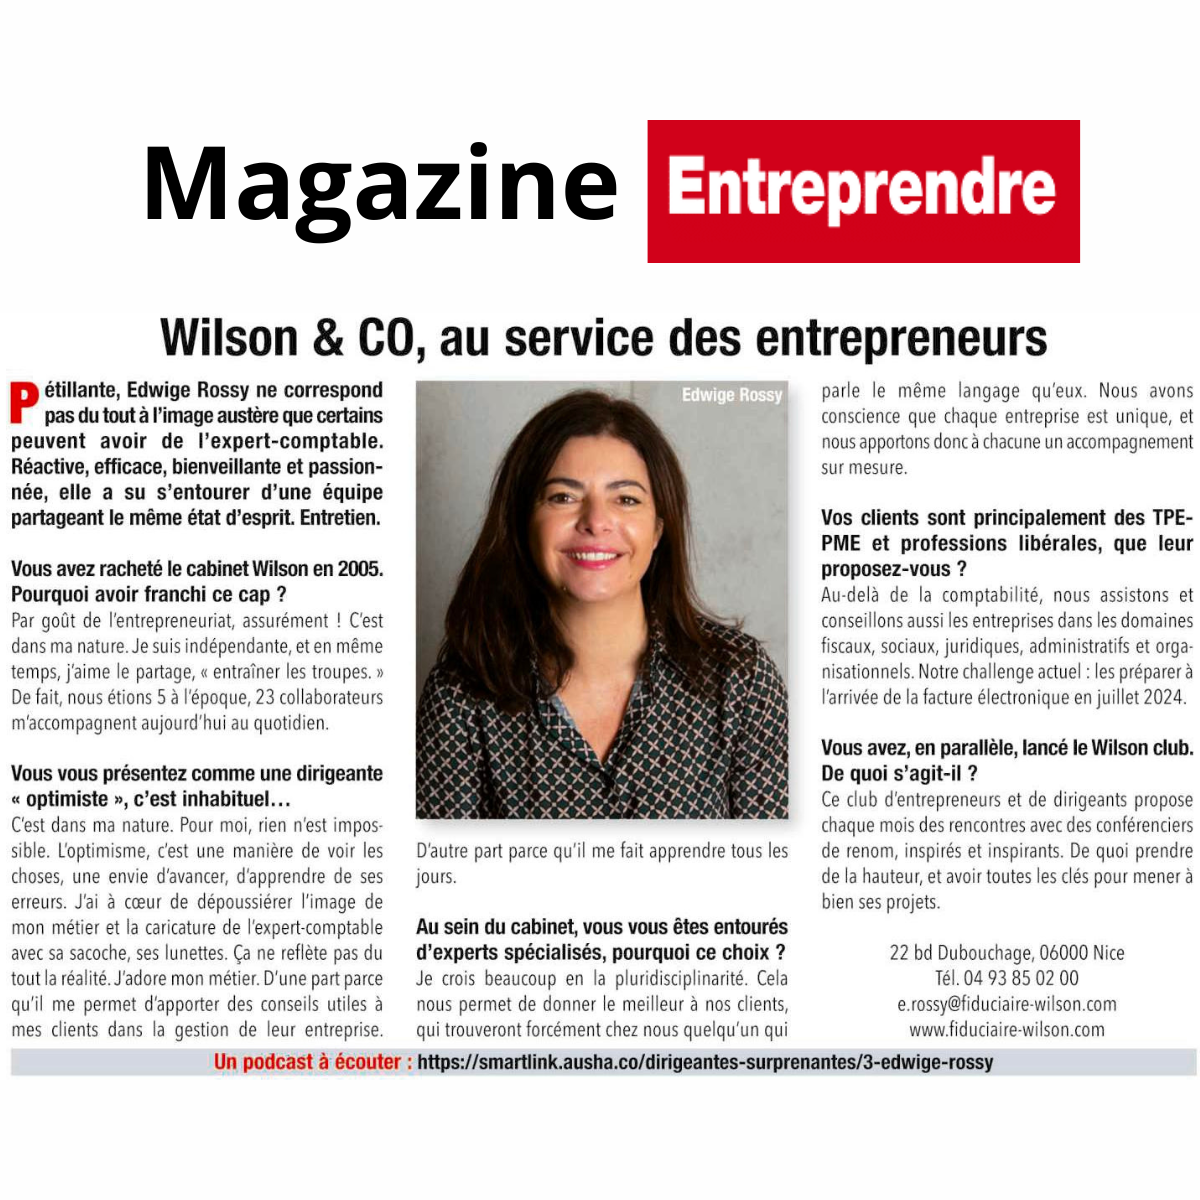 Un élan d'optimisme, notre dirigeante Edwige et son article dans le magazine Entreprendre